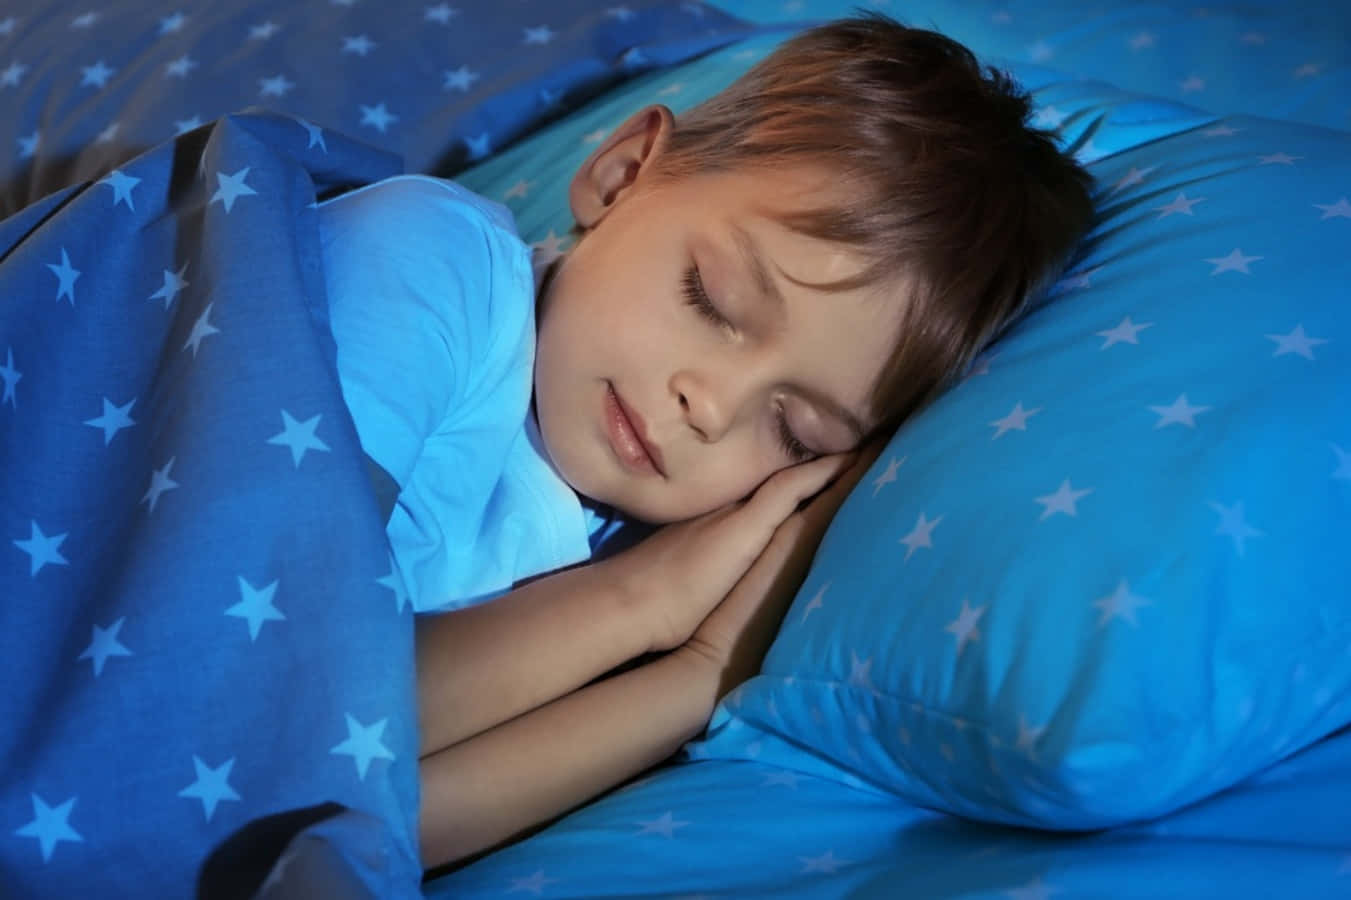 Einjunger Junge Schläft In Einer Blauen Decke.